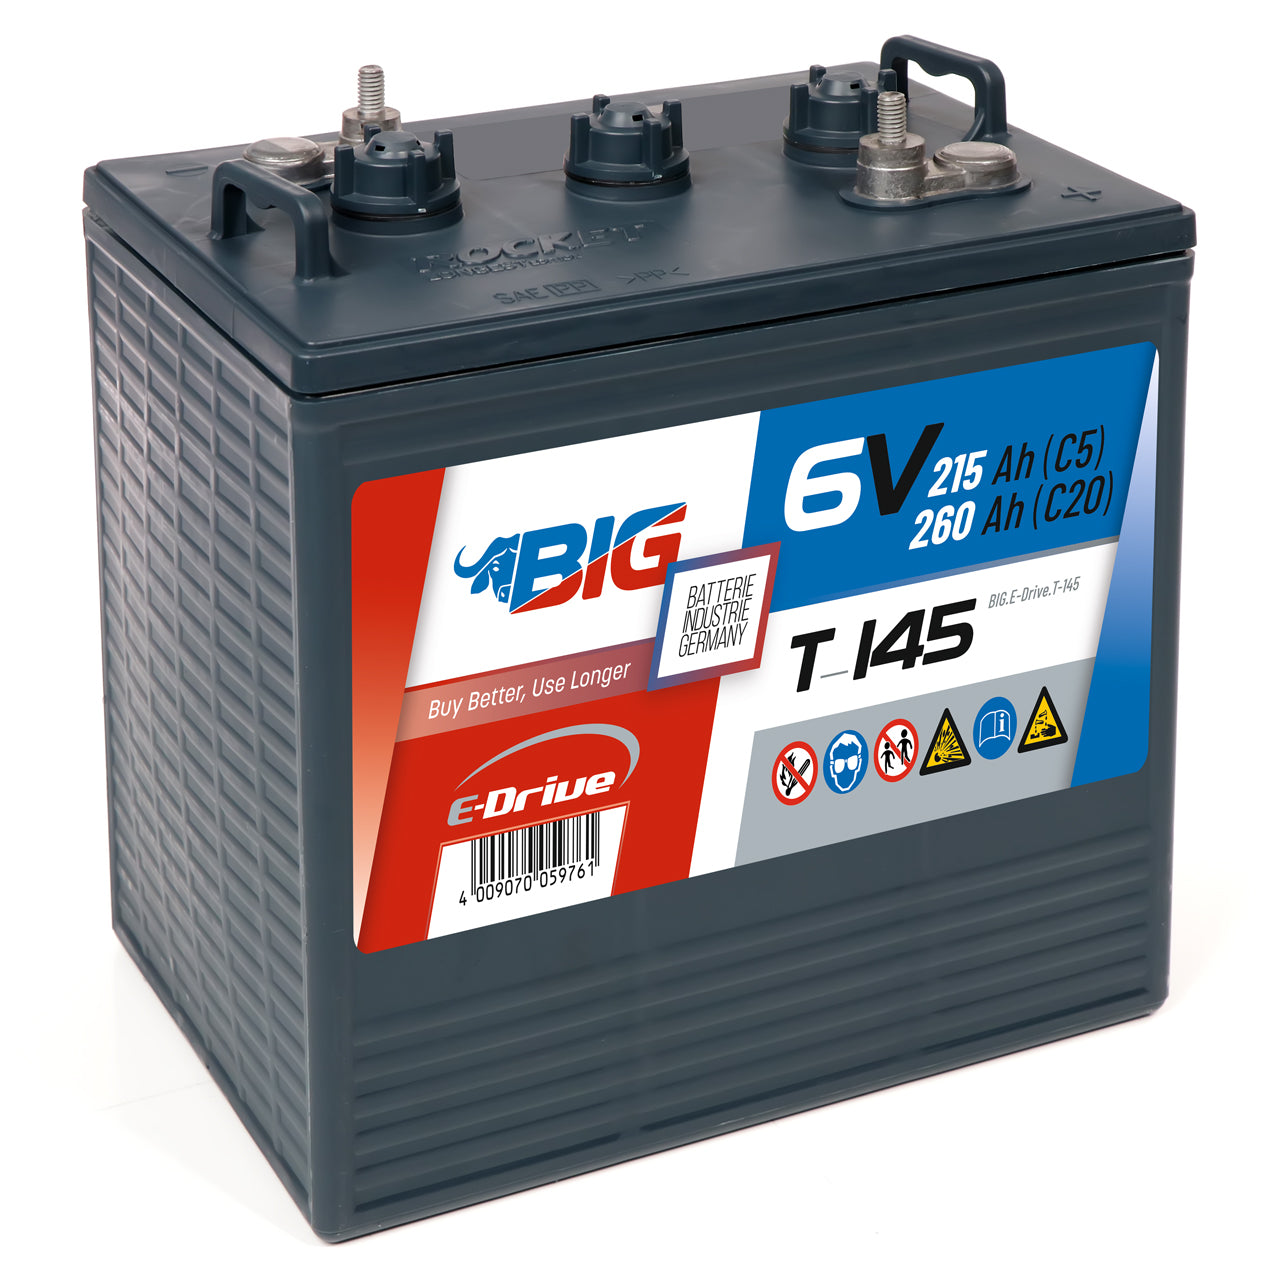 BIG E-Drive T-145 (GC2) 6V 260Ah